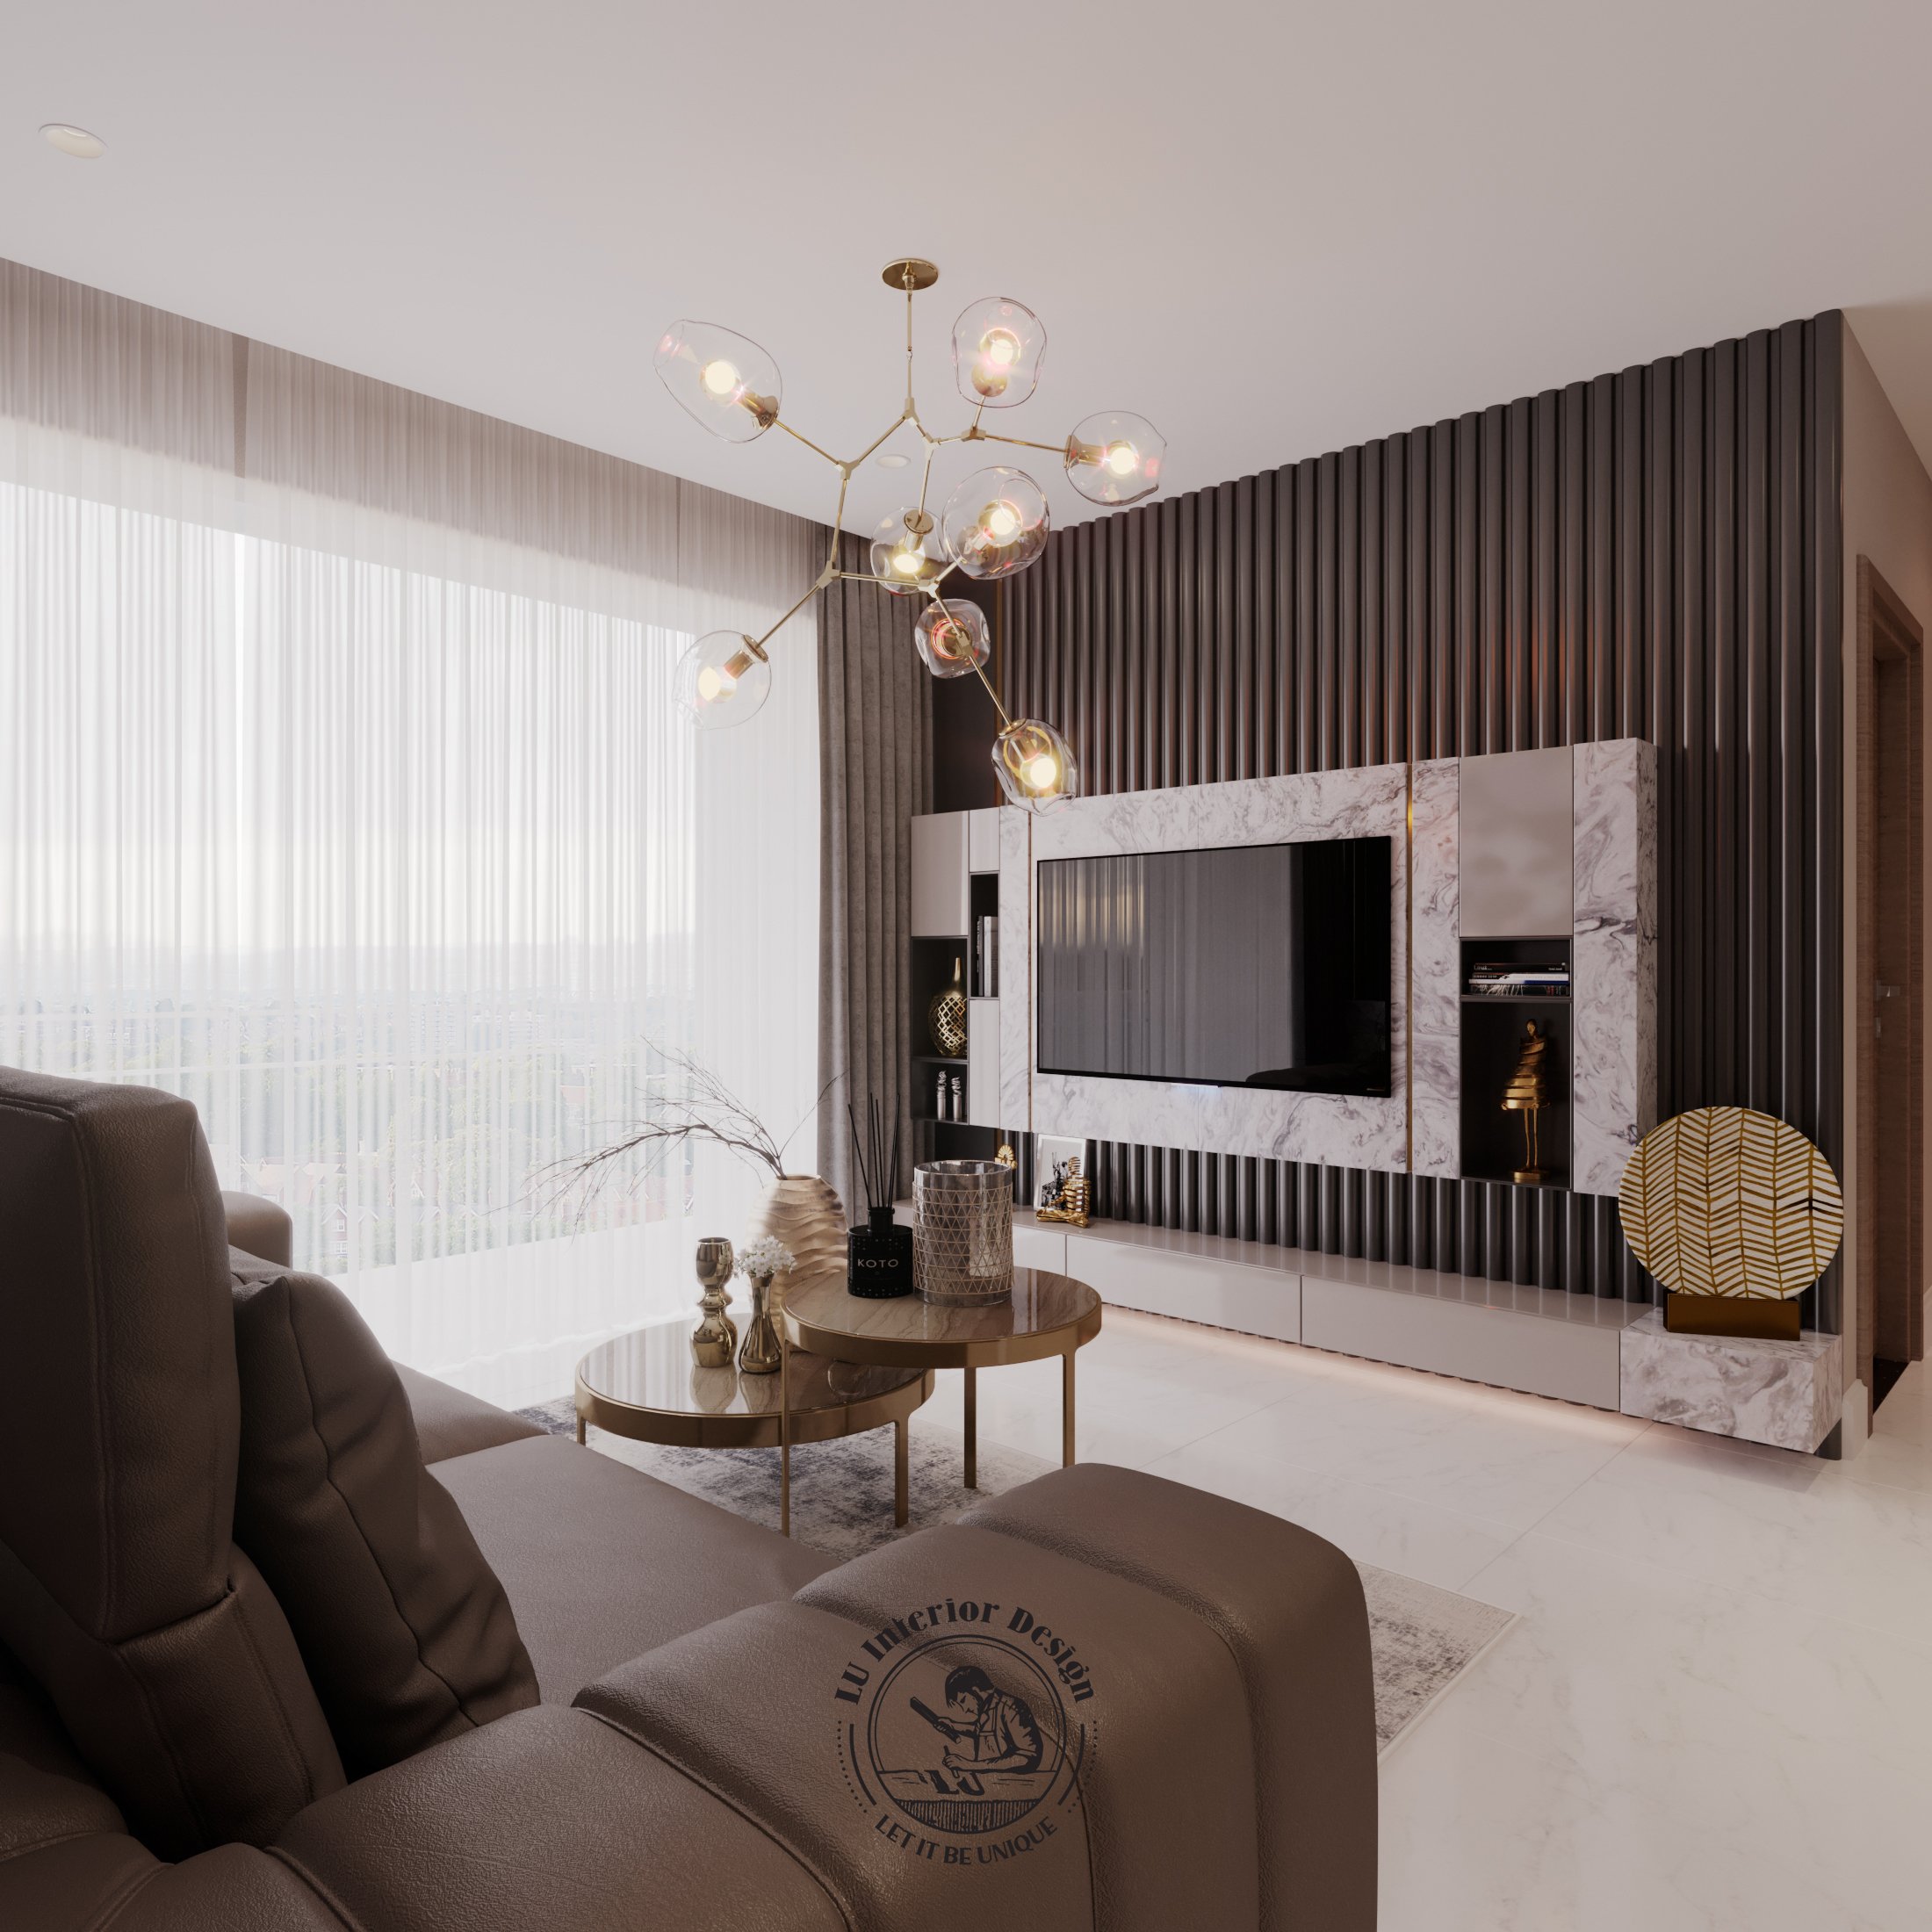 Dự án thiết kế nội thất căn hộ hiện đại Sunwah Pearl | Lu Design thực hiện